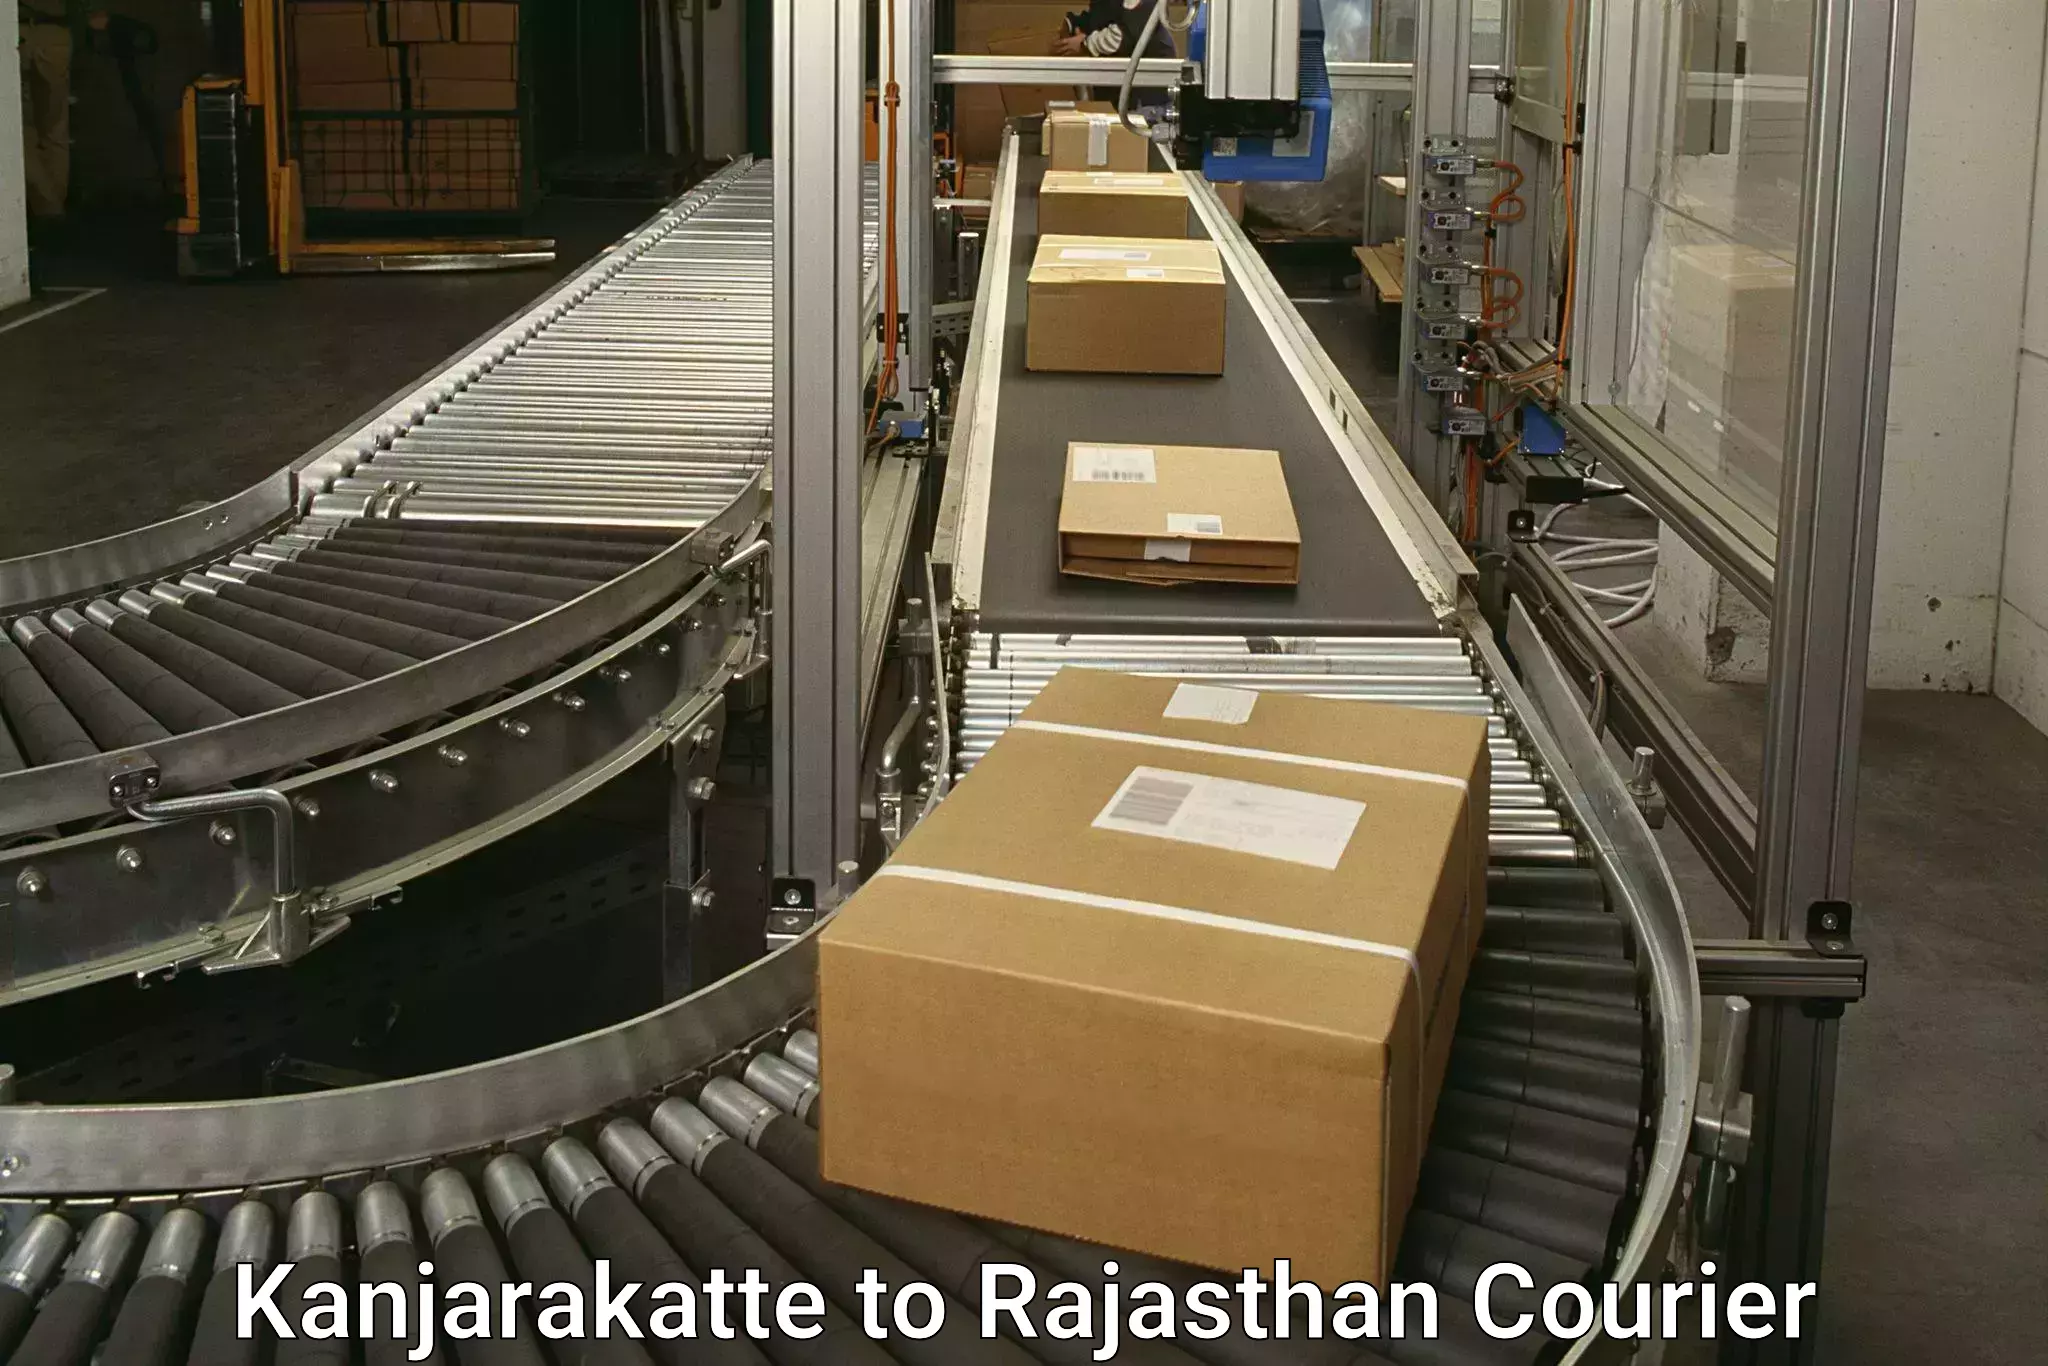 Tech-enabled shipping Kanjarakatte to Bijainagar